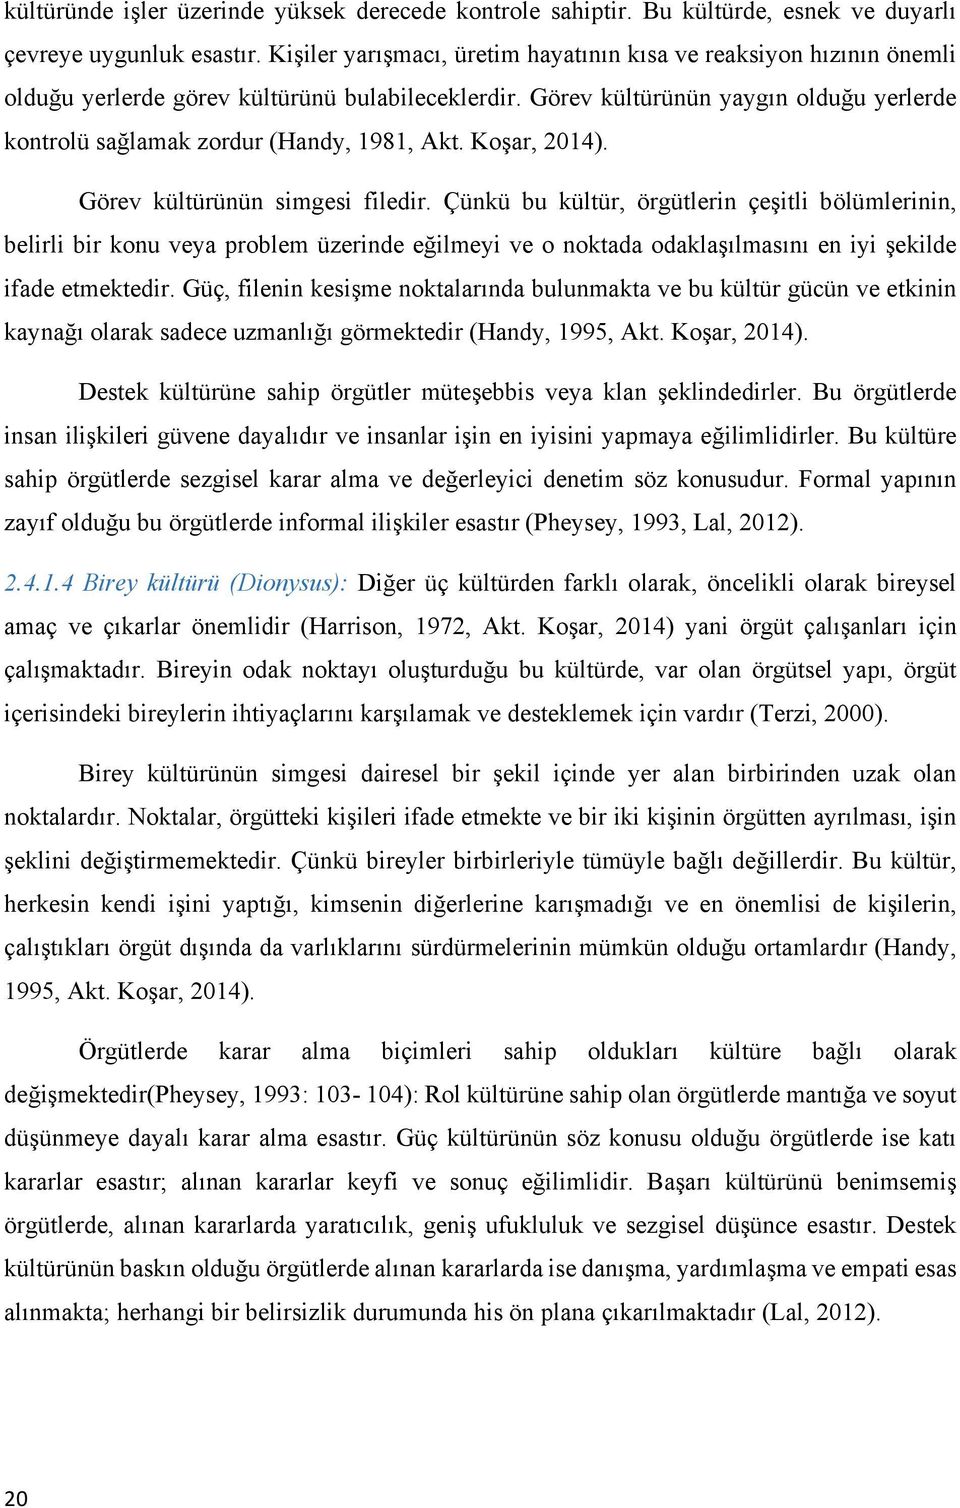 Görev kültürünün yaygın olduğu yerlerde kontrolü sağlamak zordur (Handy, 1981, Akt. Koşar, 2014). Görev kültürünün simgesi filedir.